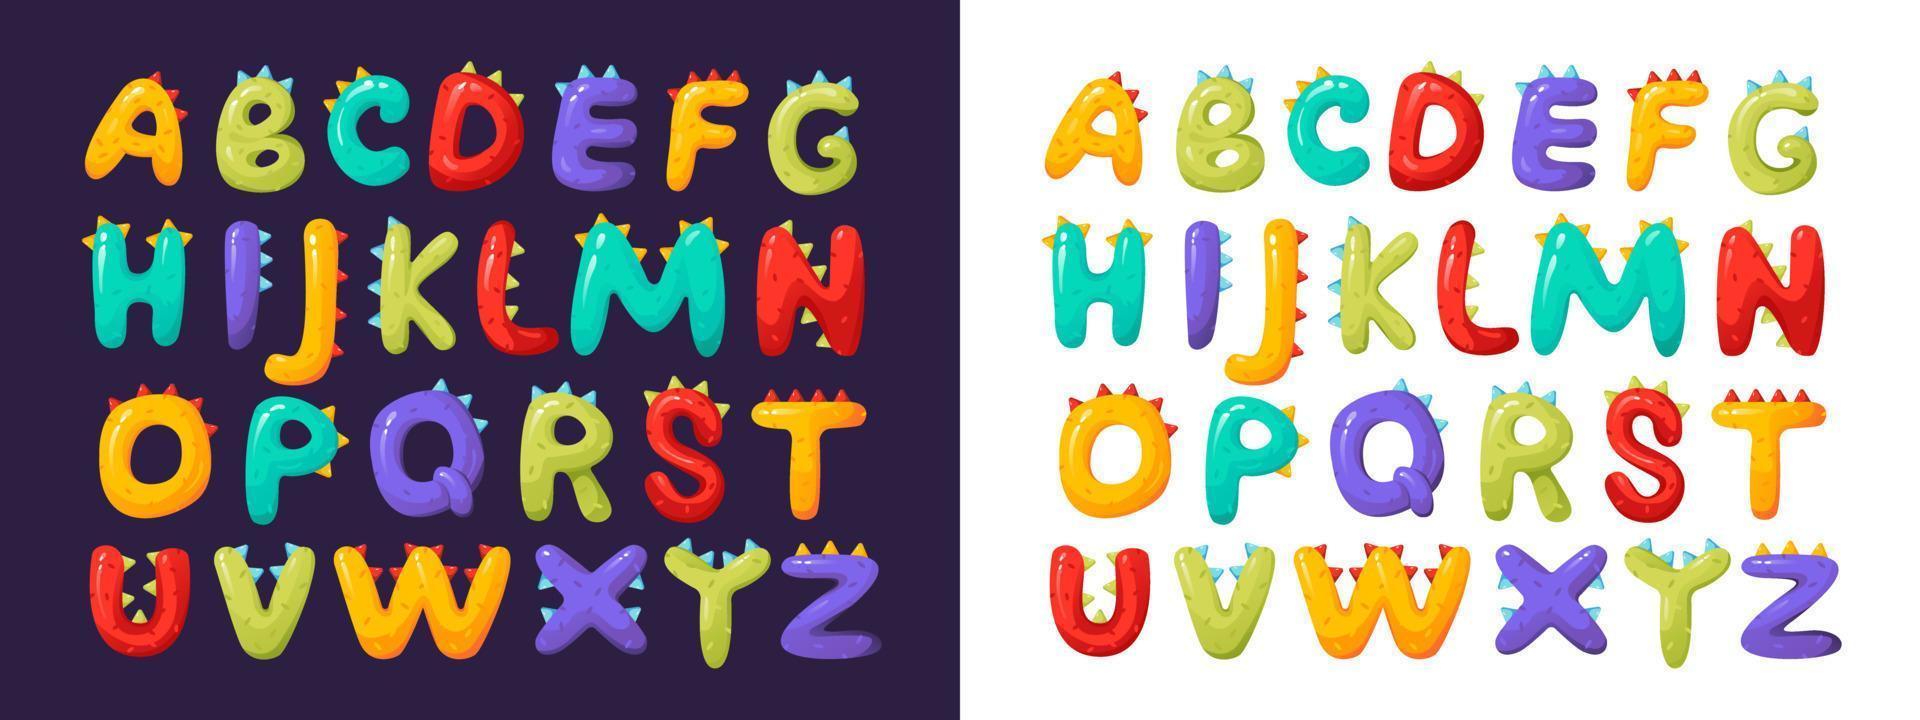 alfabeto infantil, fuente colorida y estilizada. letras y números tridimensionales. ilustración vectorial vector